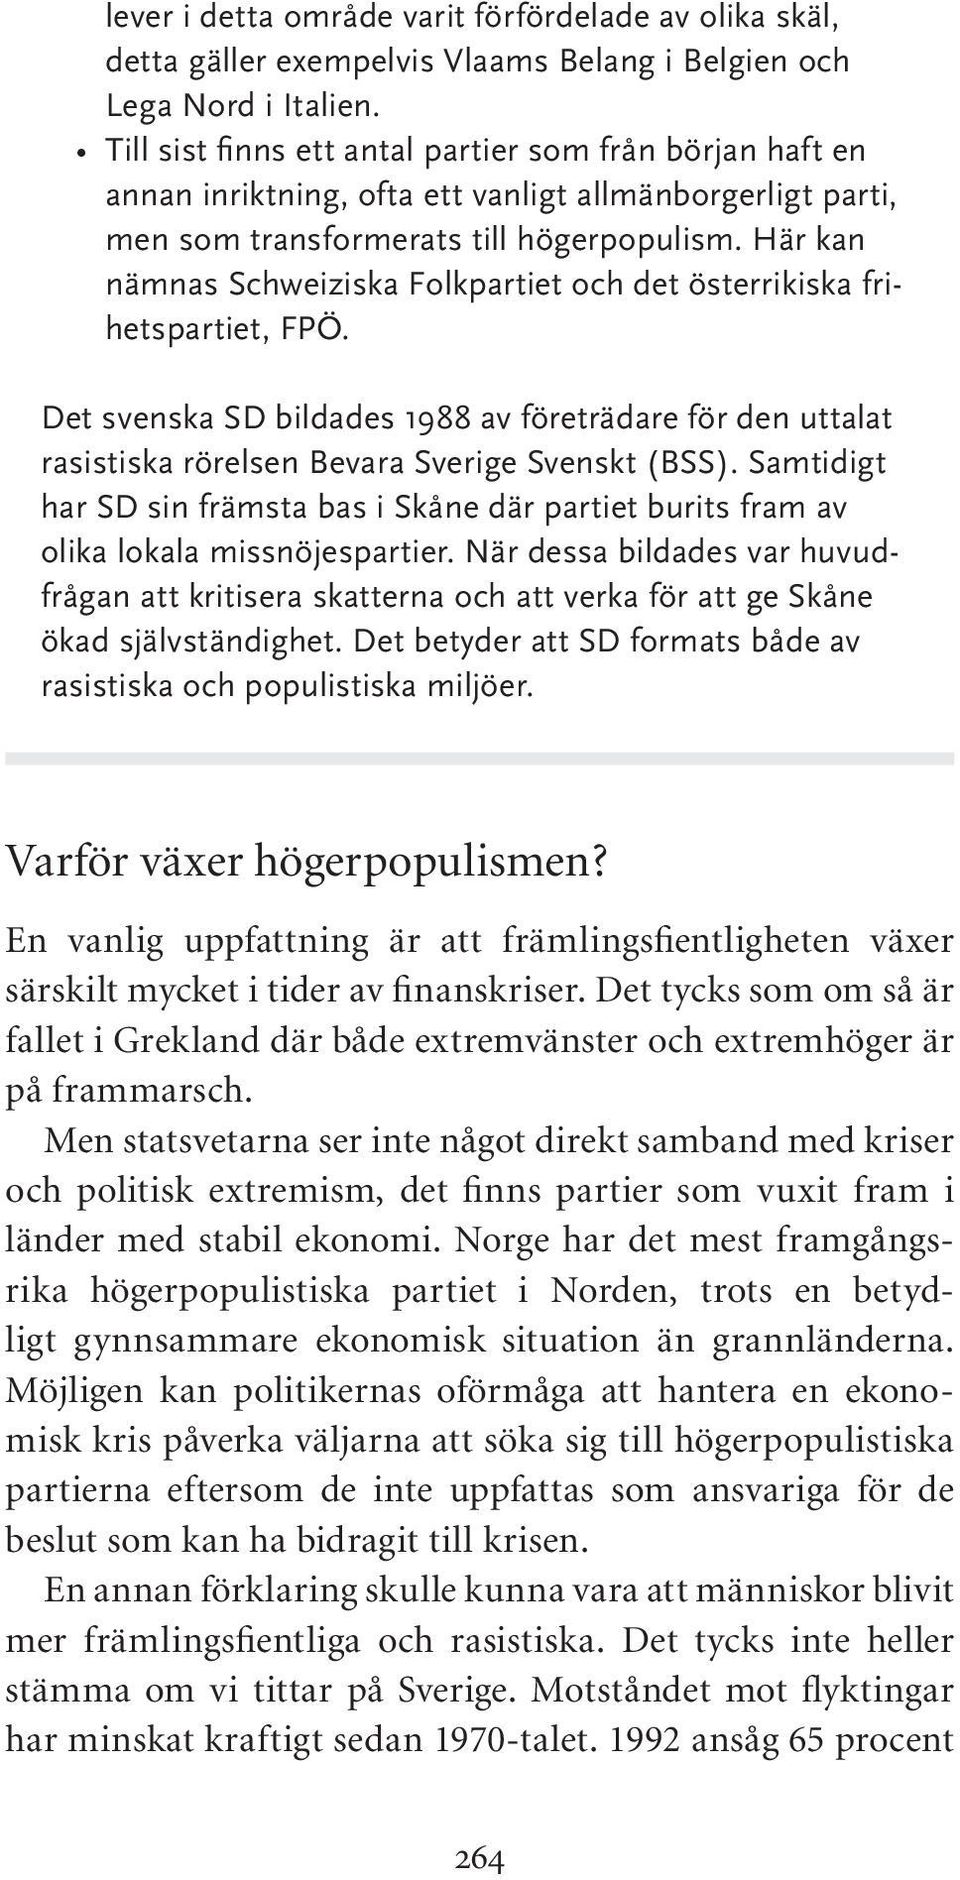 Här kan nämnas Schweiziska Folkpartiet och det österrikiska frihetspartiet, FPÖ. Det svenska SD bildades 1988 av företrädare för den uttalat rasistiska rörelsen Bevara Sverige Svenskt (BSS).